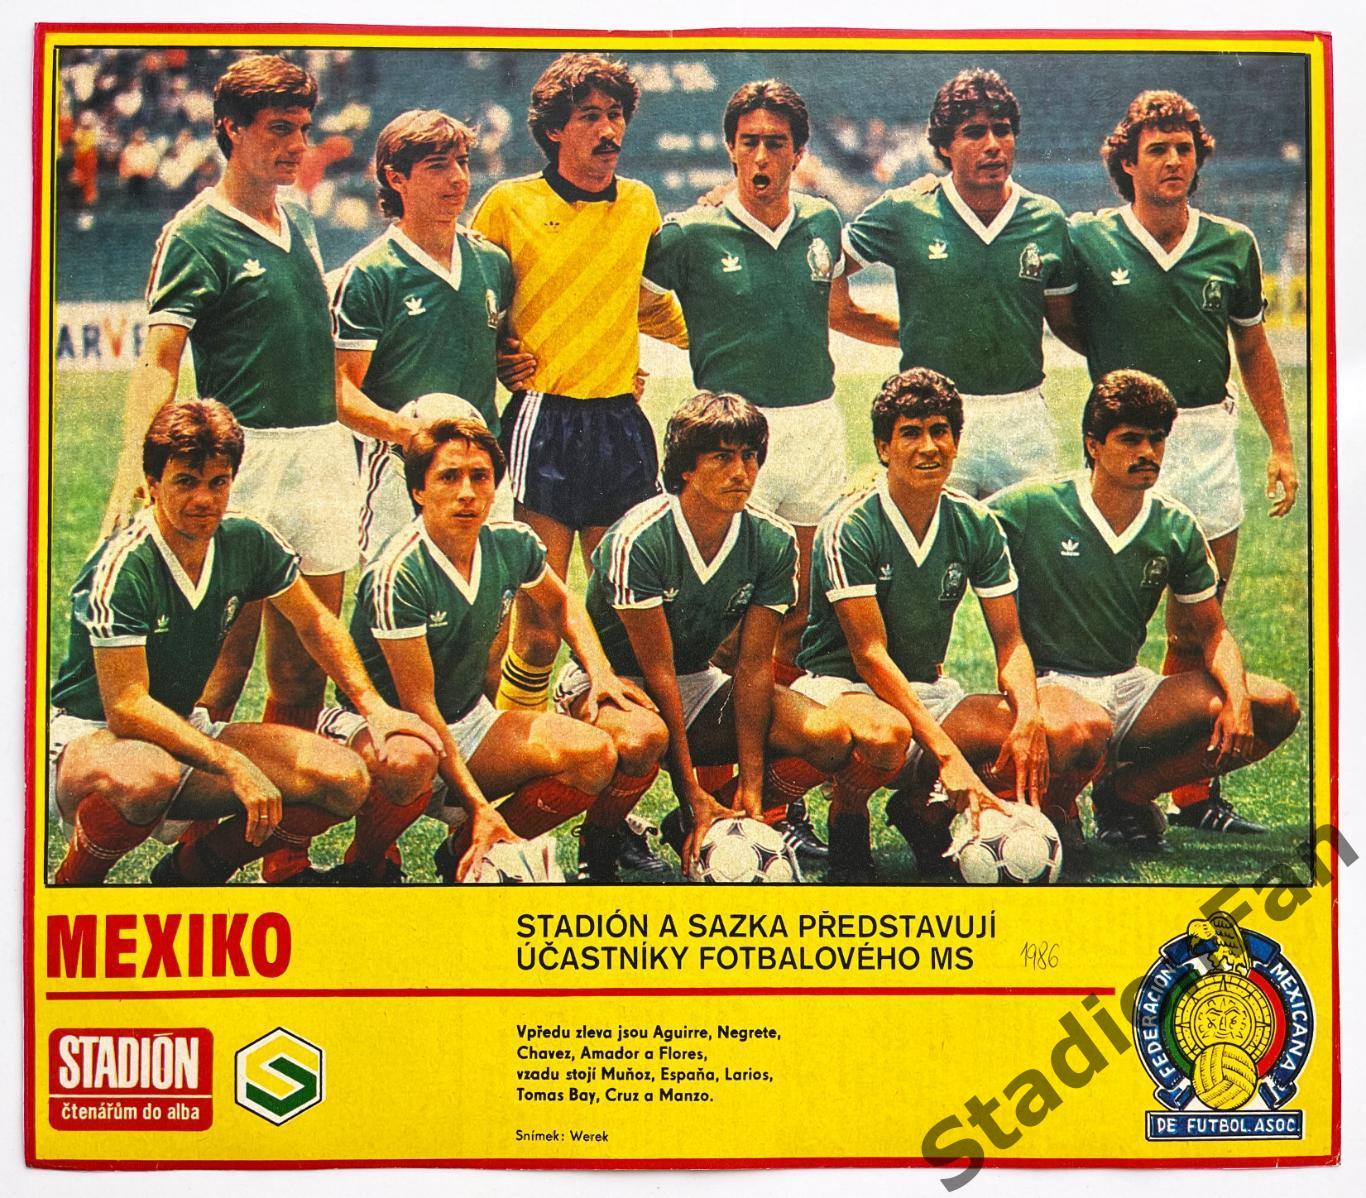 Постер из журнала Стадион (Stadion) - Mexiko, 1986